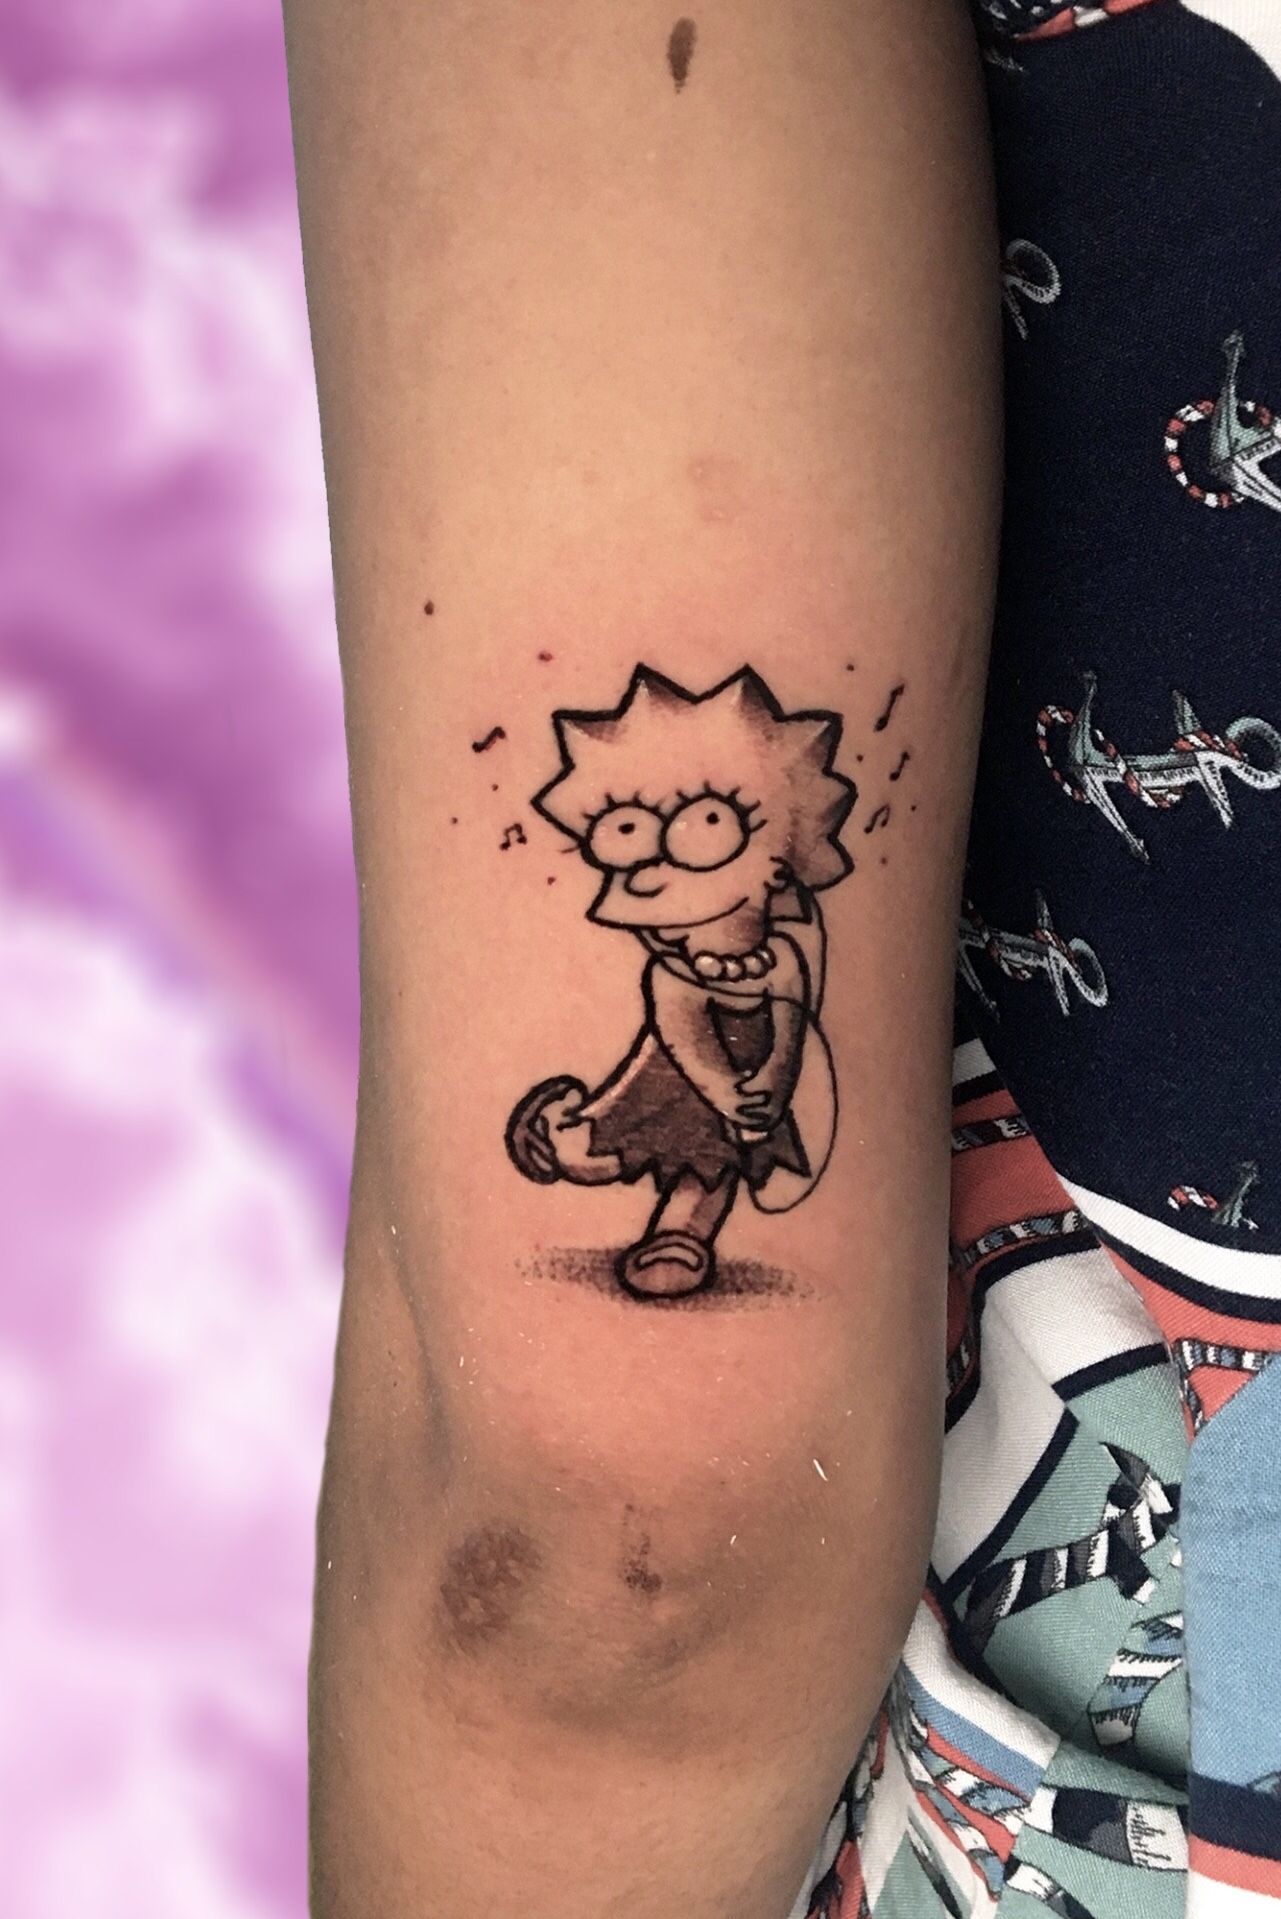 Bart and Lisa Simpson ice cream tattoo by FacundoPereyra on DeviantArt